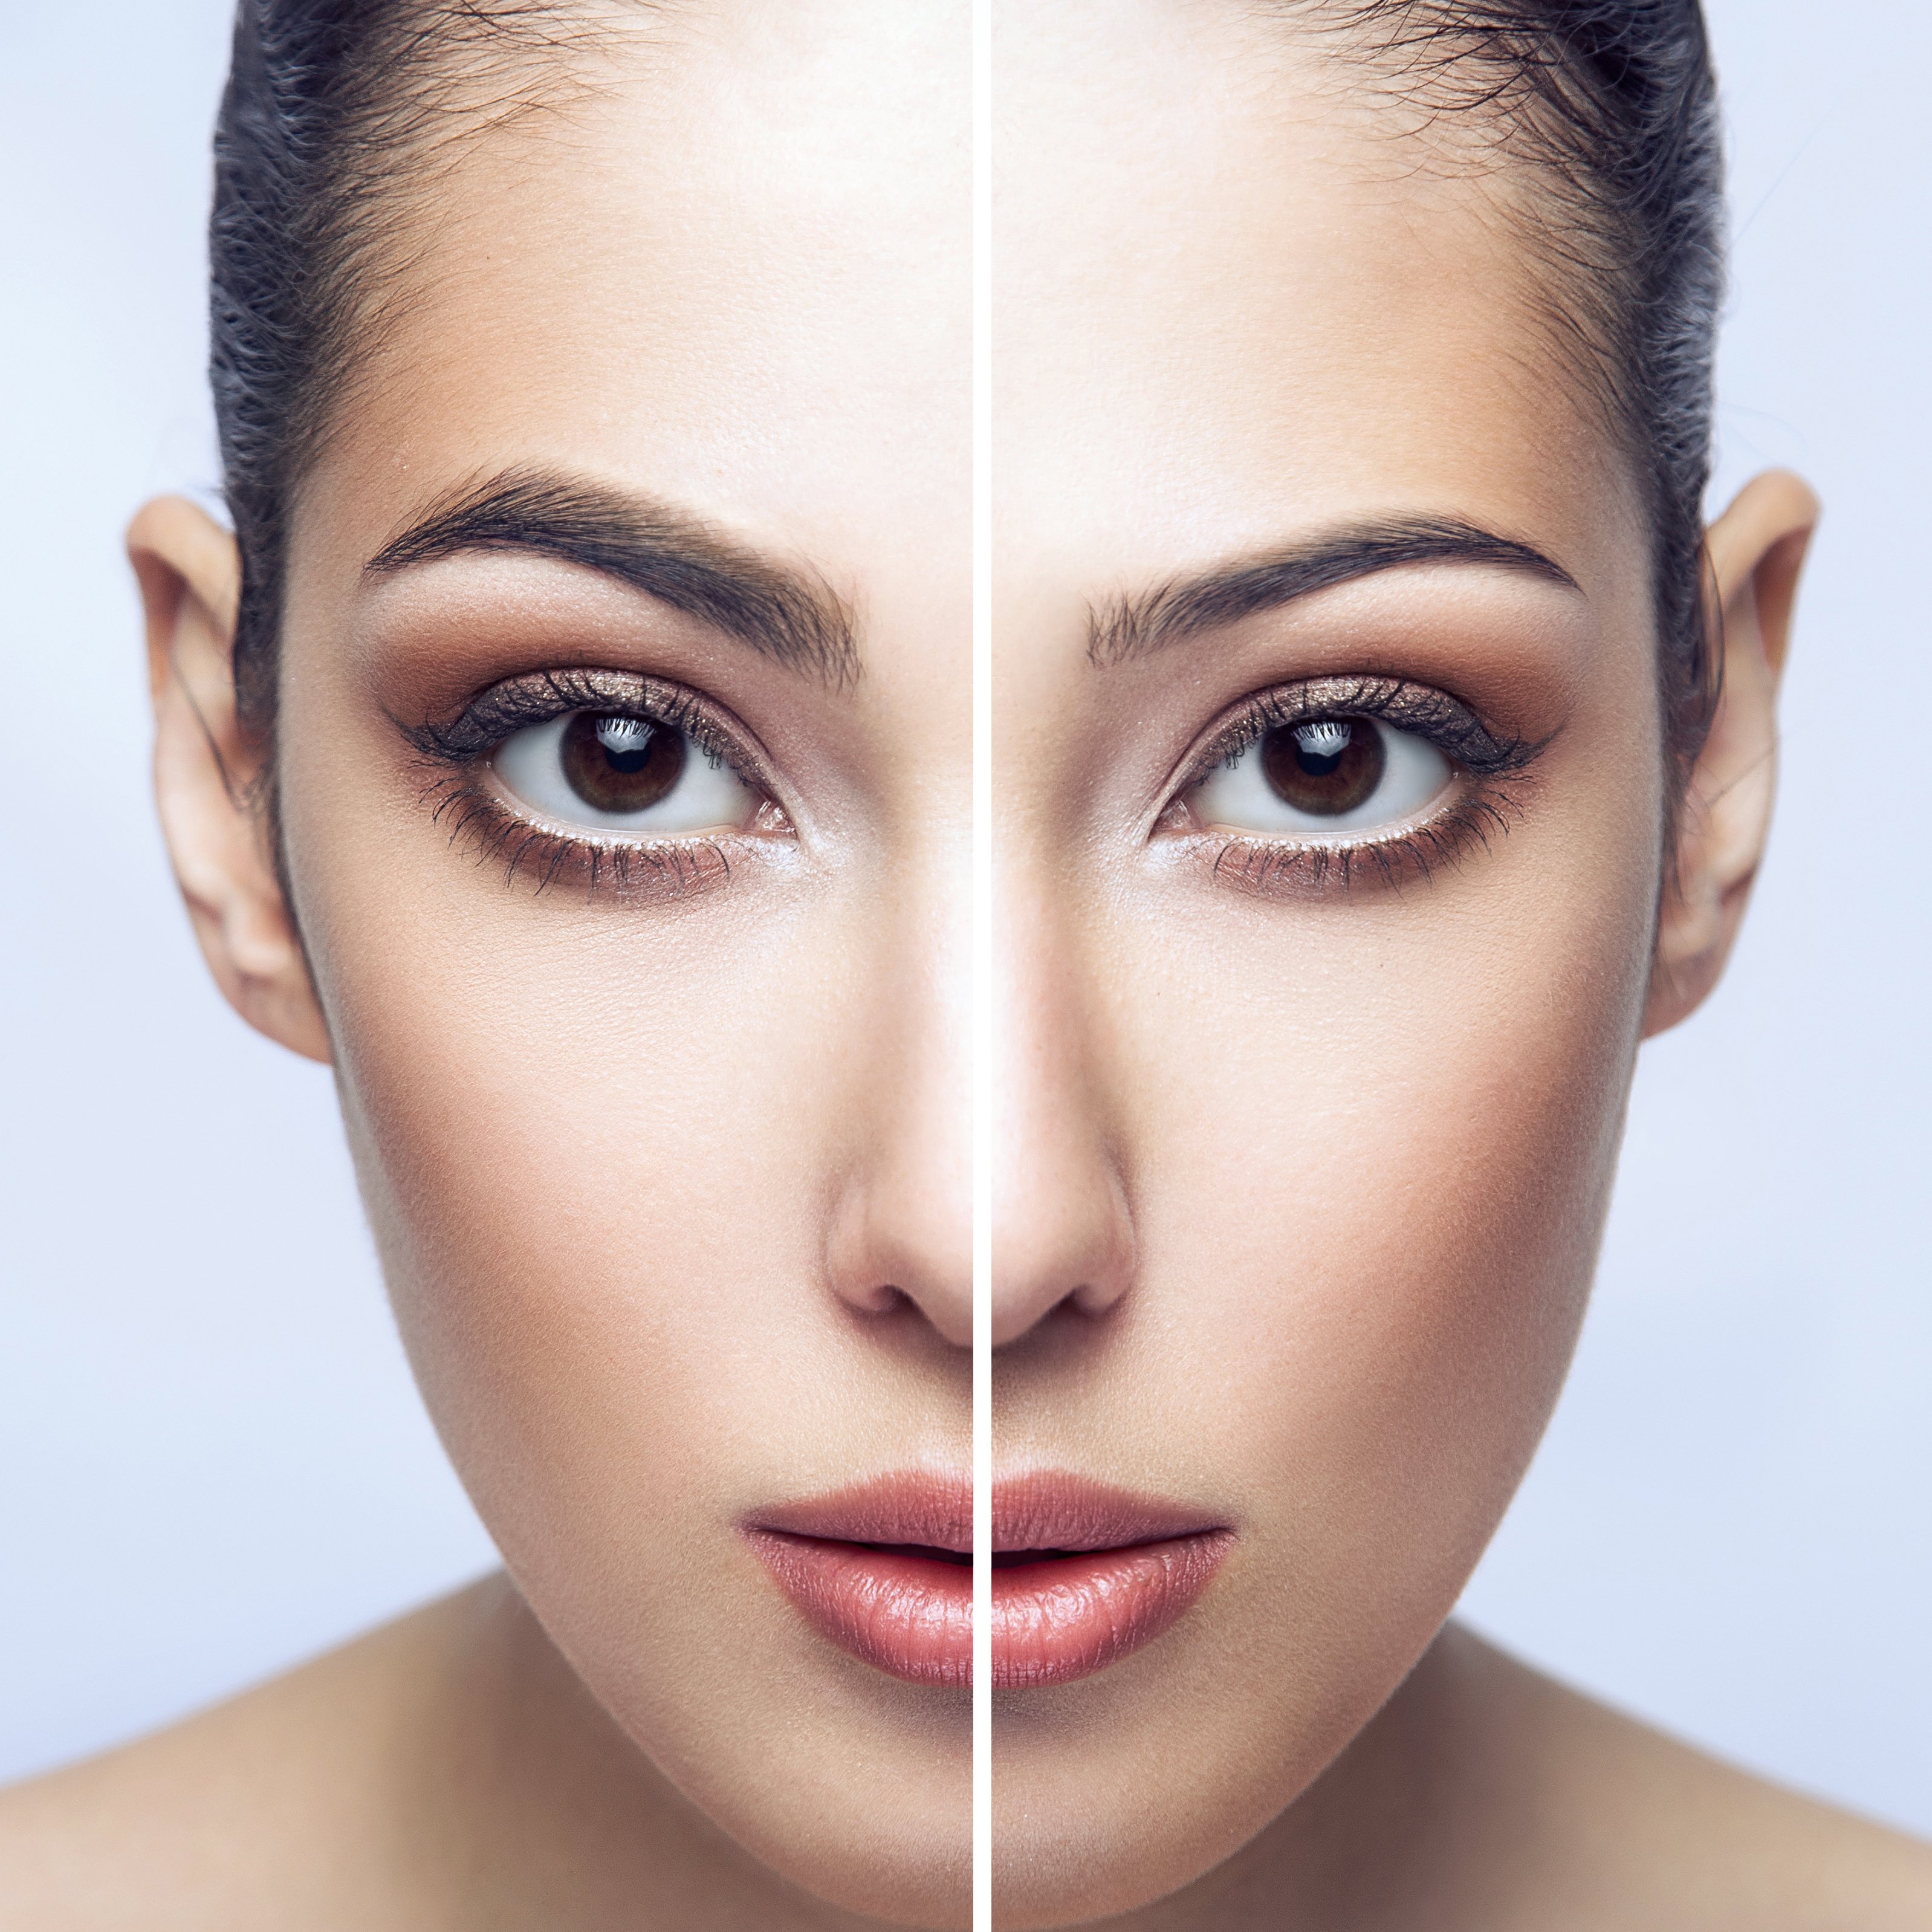 Retrato de una mujer con una ceja gruesa y otra delgada. | Foto: Shutterstock